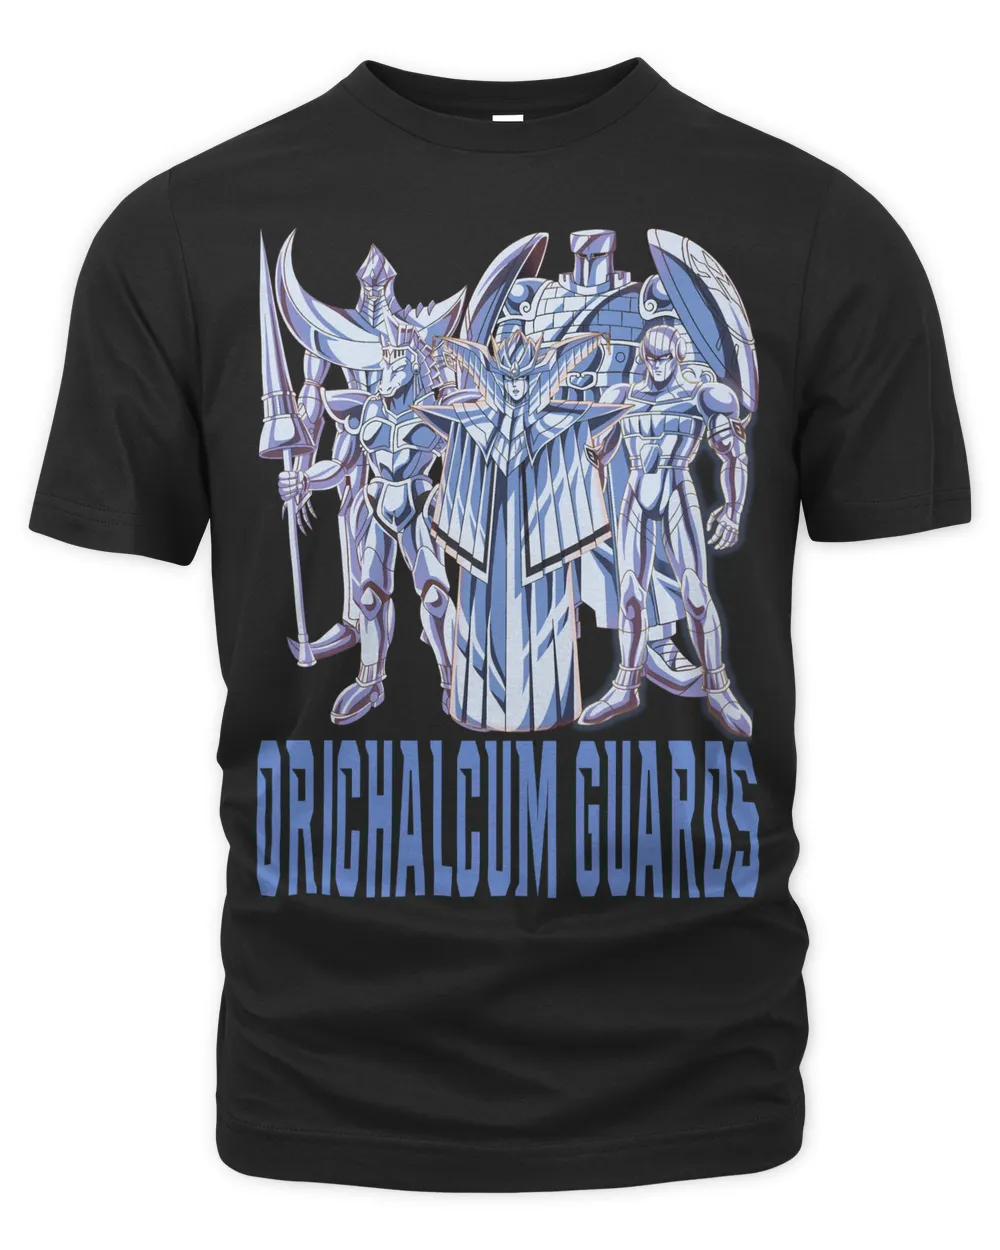 Orichalcum Guards Dragon Quest